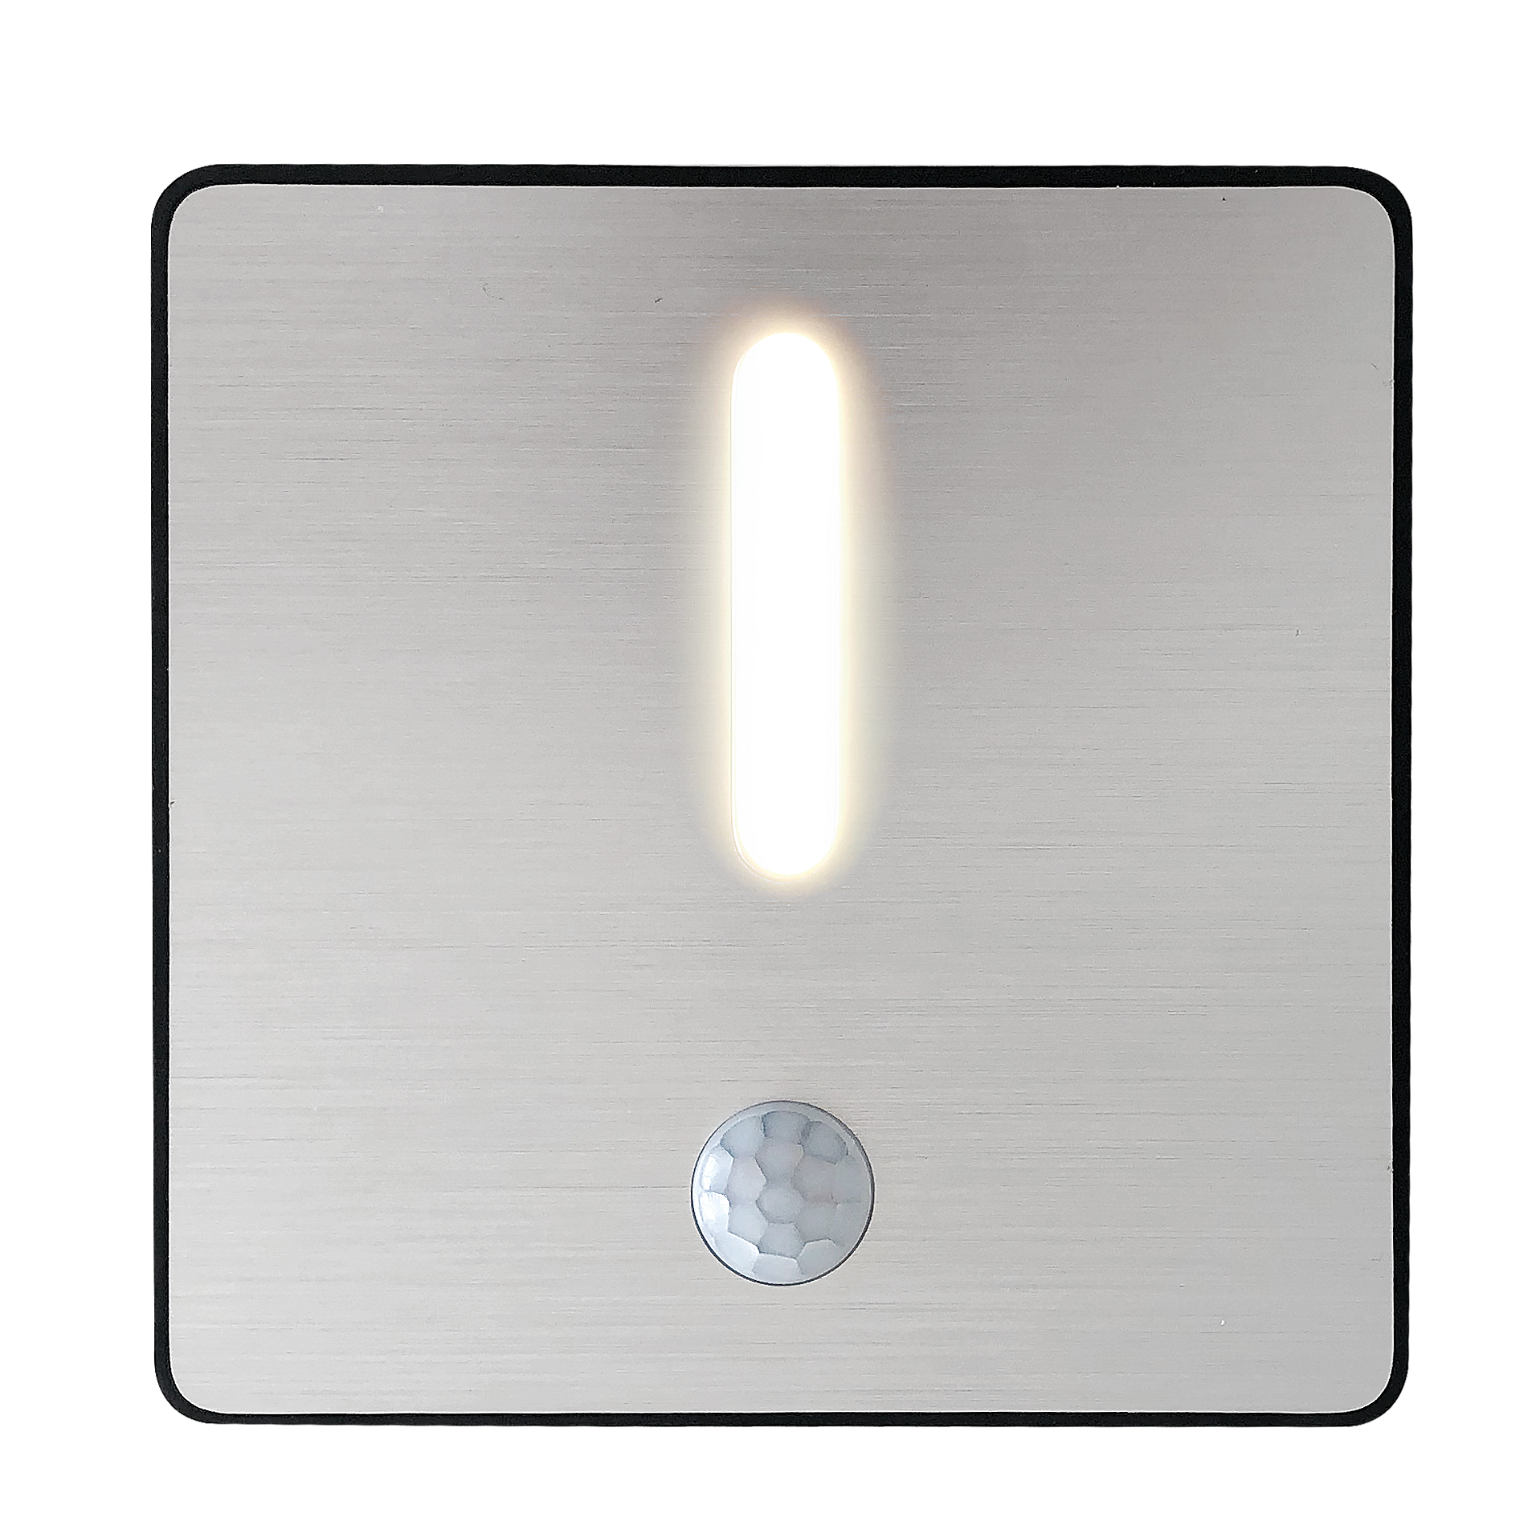 Naktinis jutiklinis šviestuvas HENSKE, 26 lm, elementai 3xAA neįeina, 2,5 x 8,5 x 8,5 cm